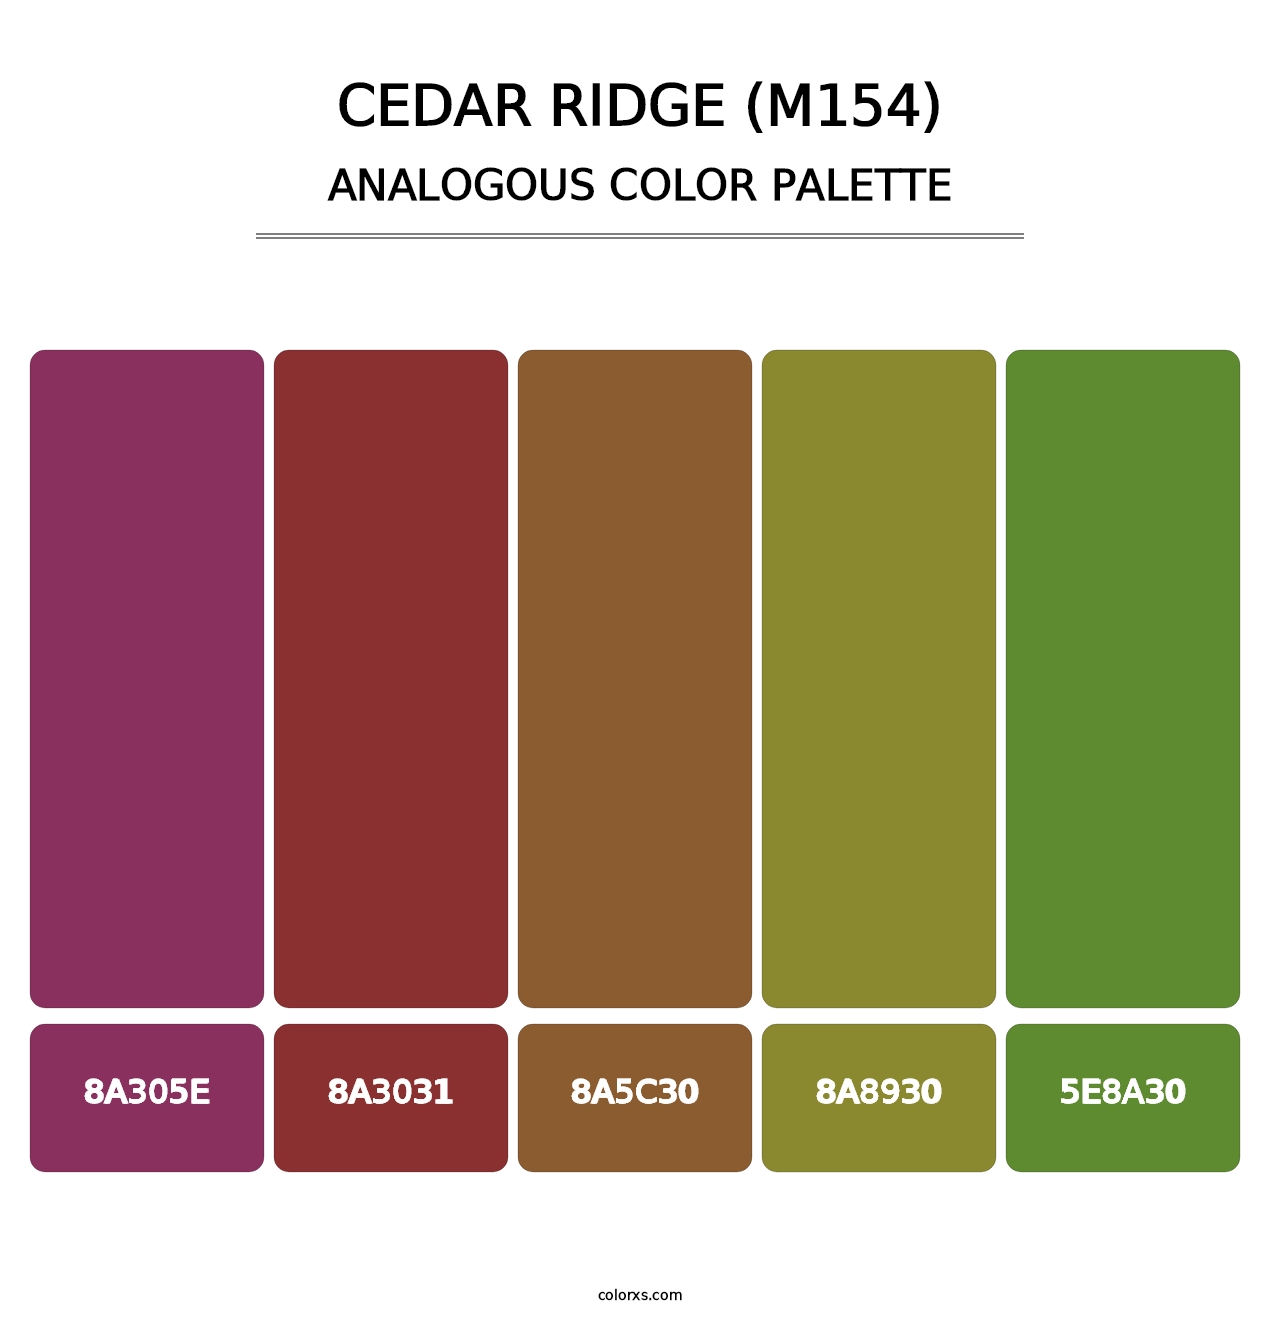 Cedar Ridge (M154) - Analogous Color Palette